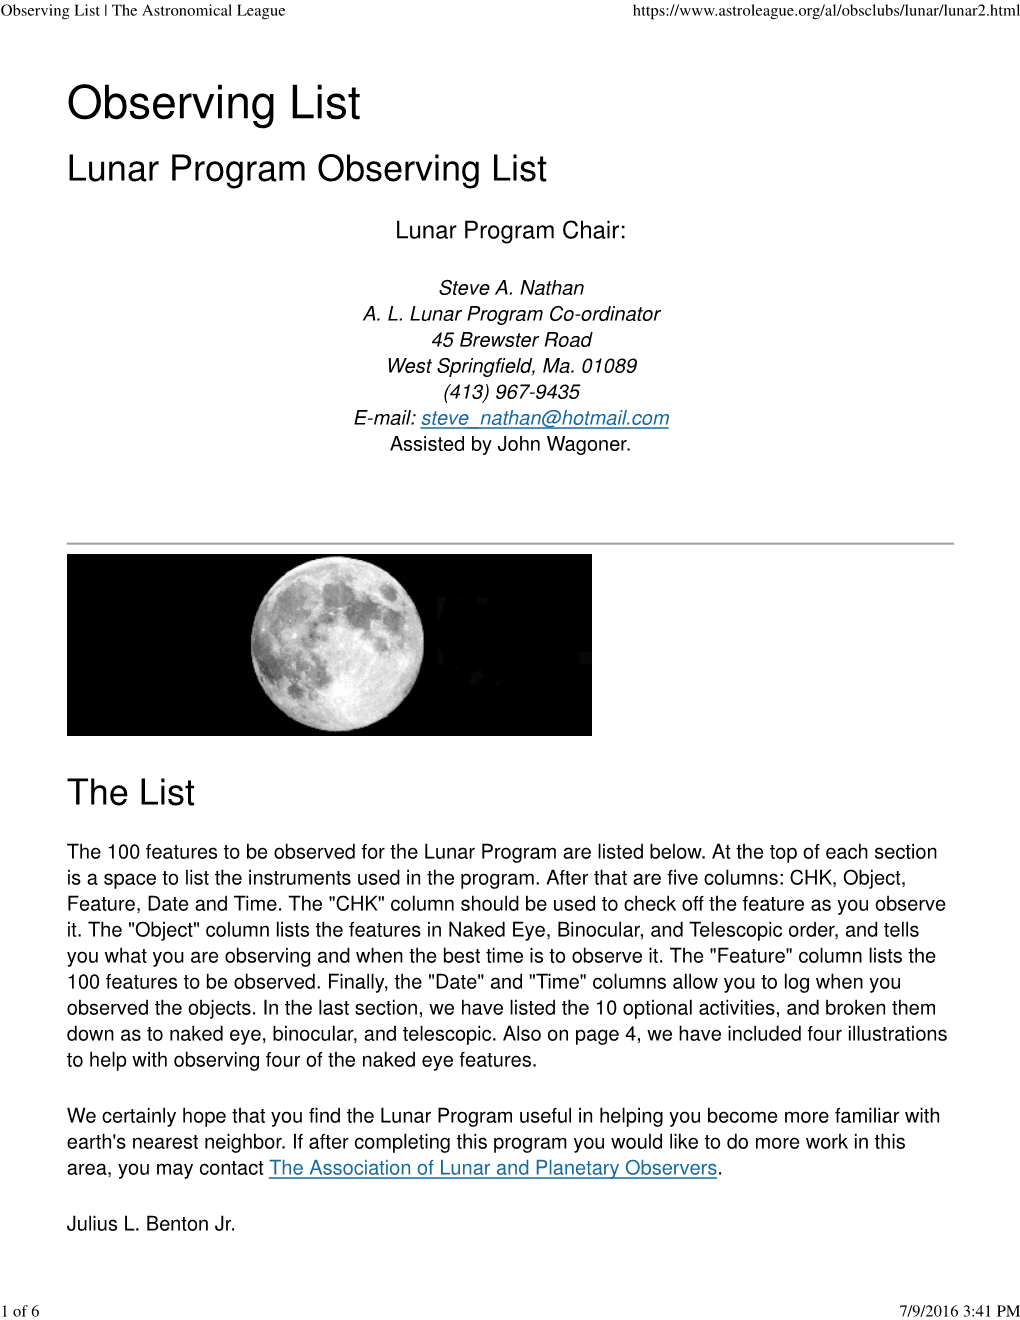 Observing List | the Astronomical League